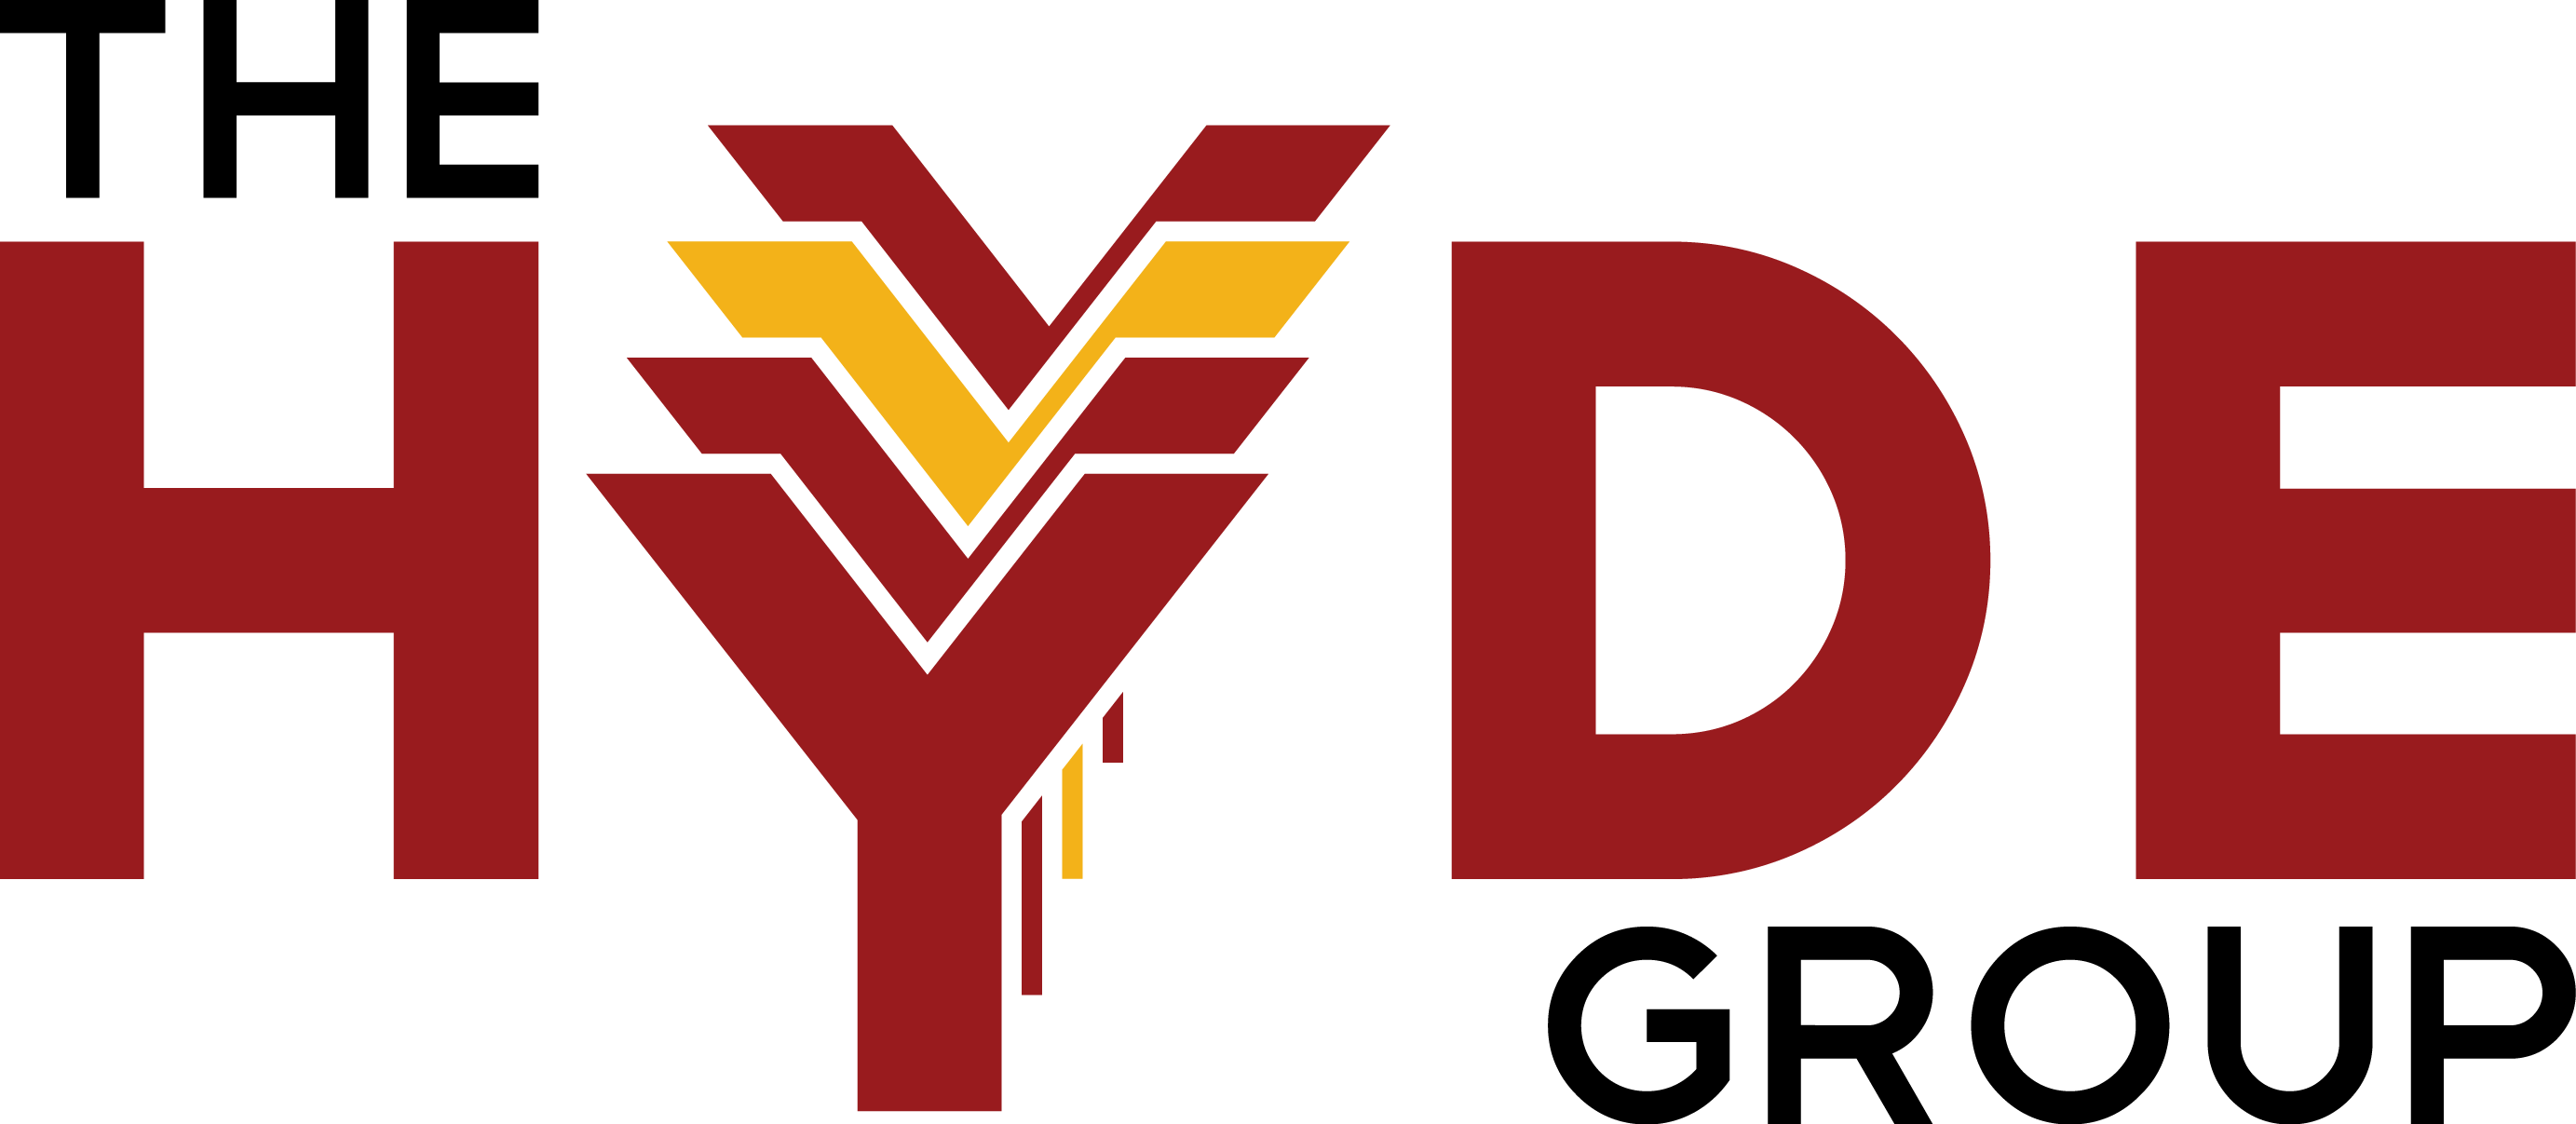 HYDE logo